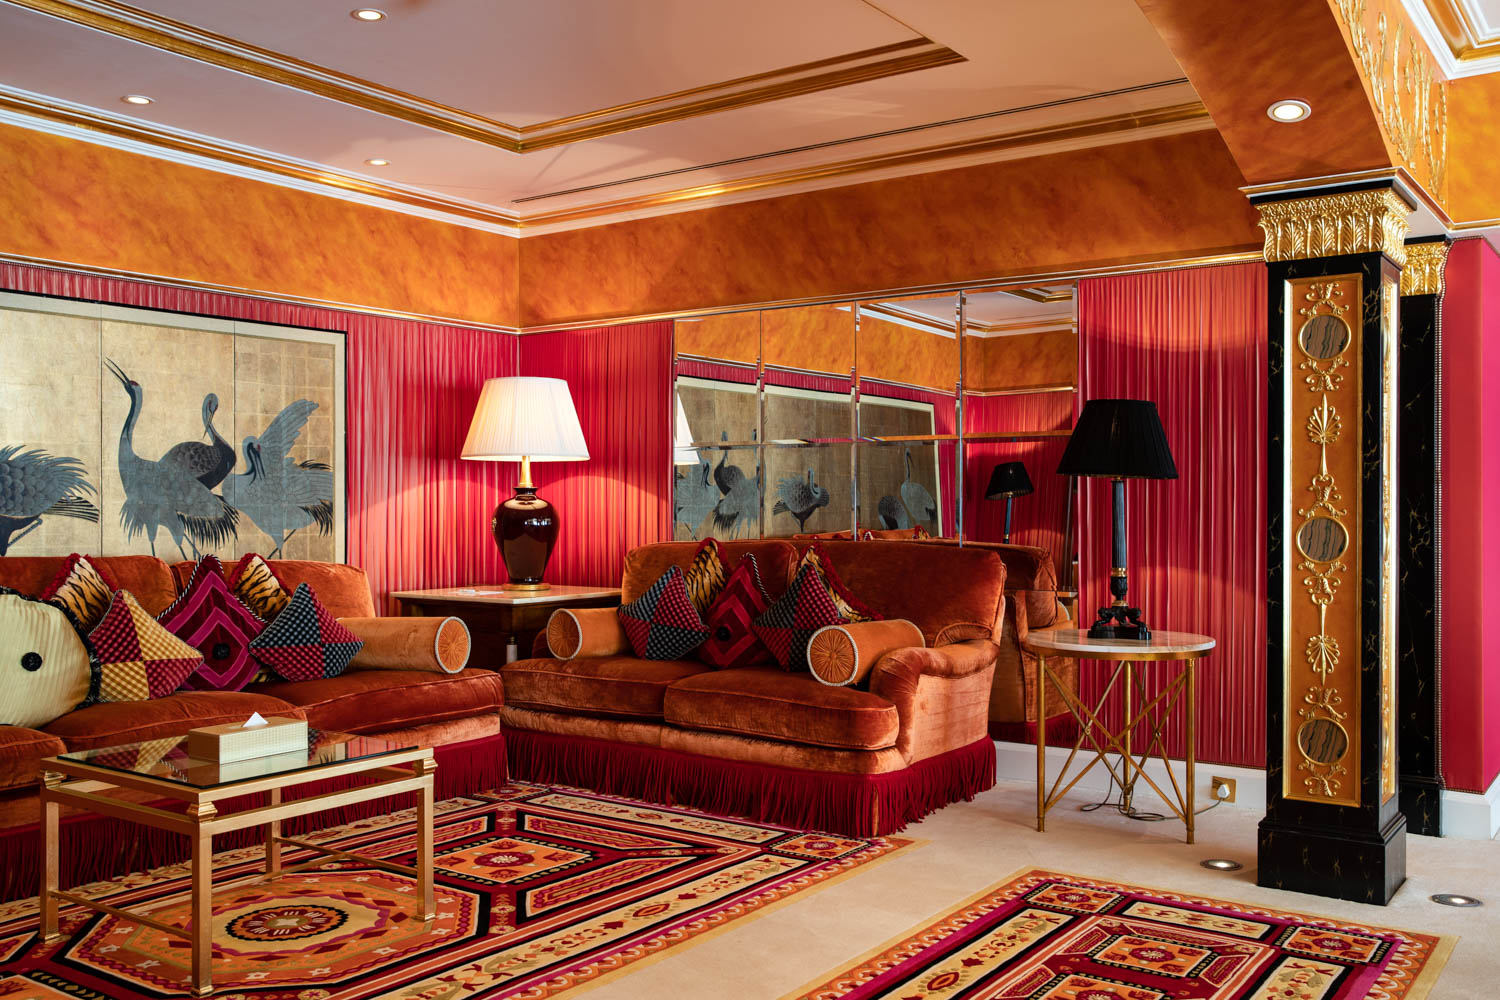 Burj Al Arab hotel royal suite 4